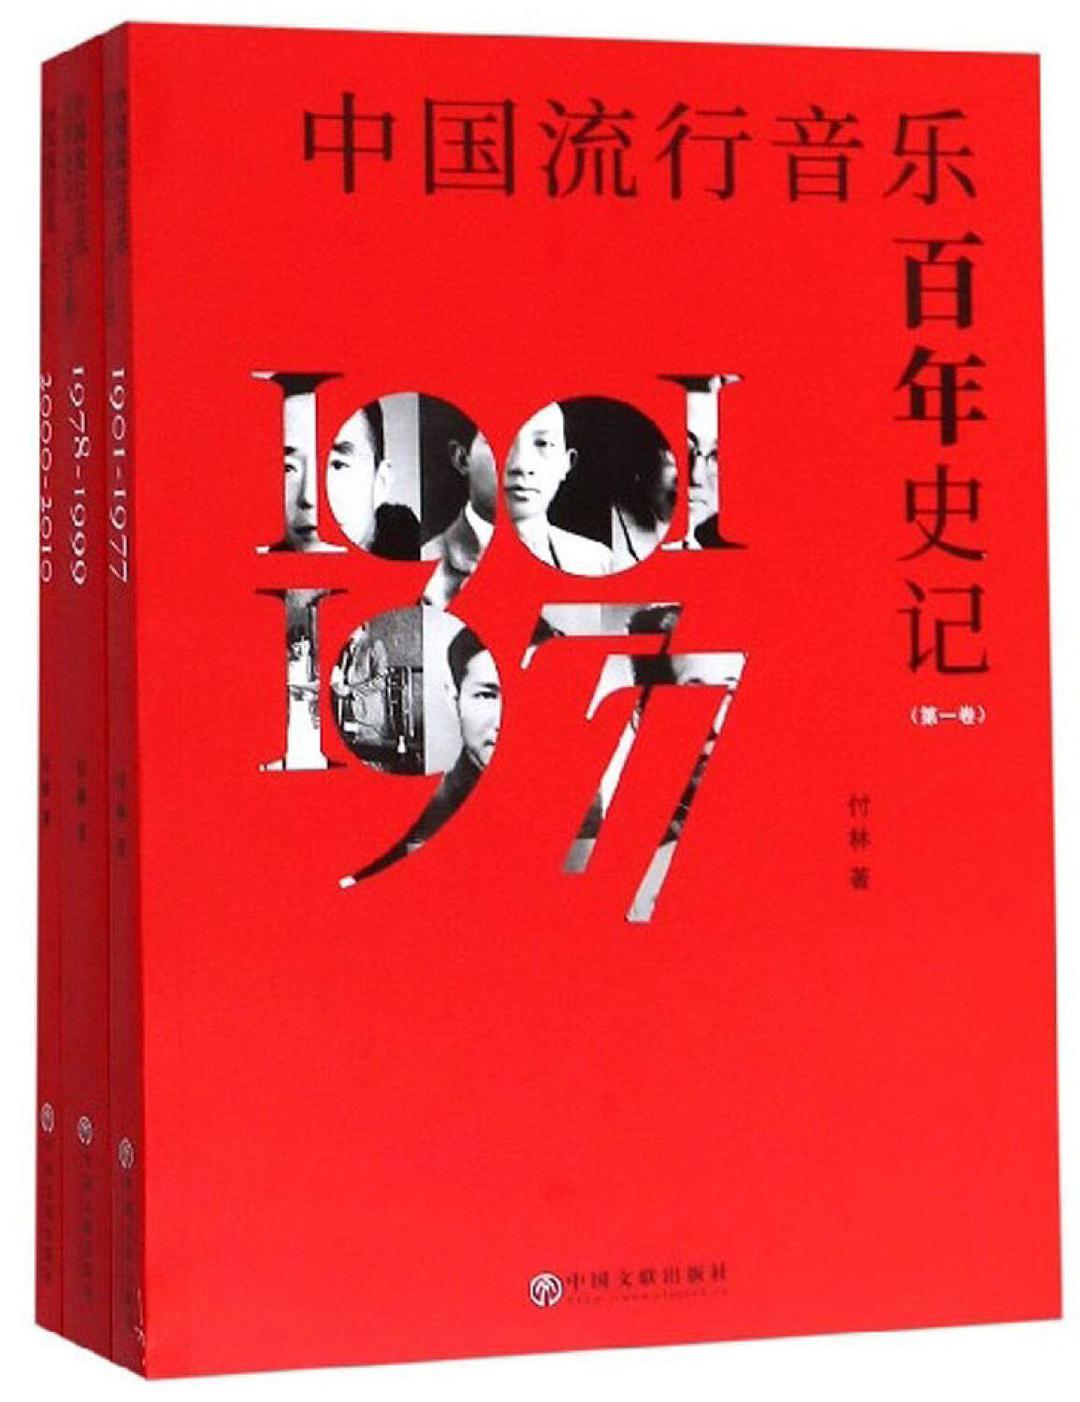 中国流行音乐百年史记 第二卷 1978-1999